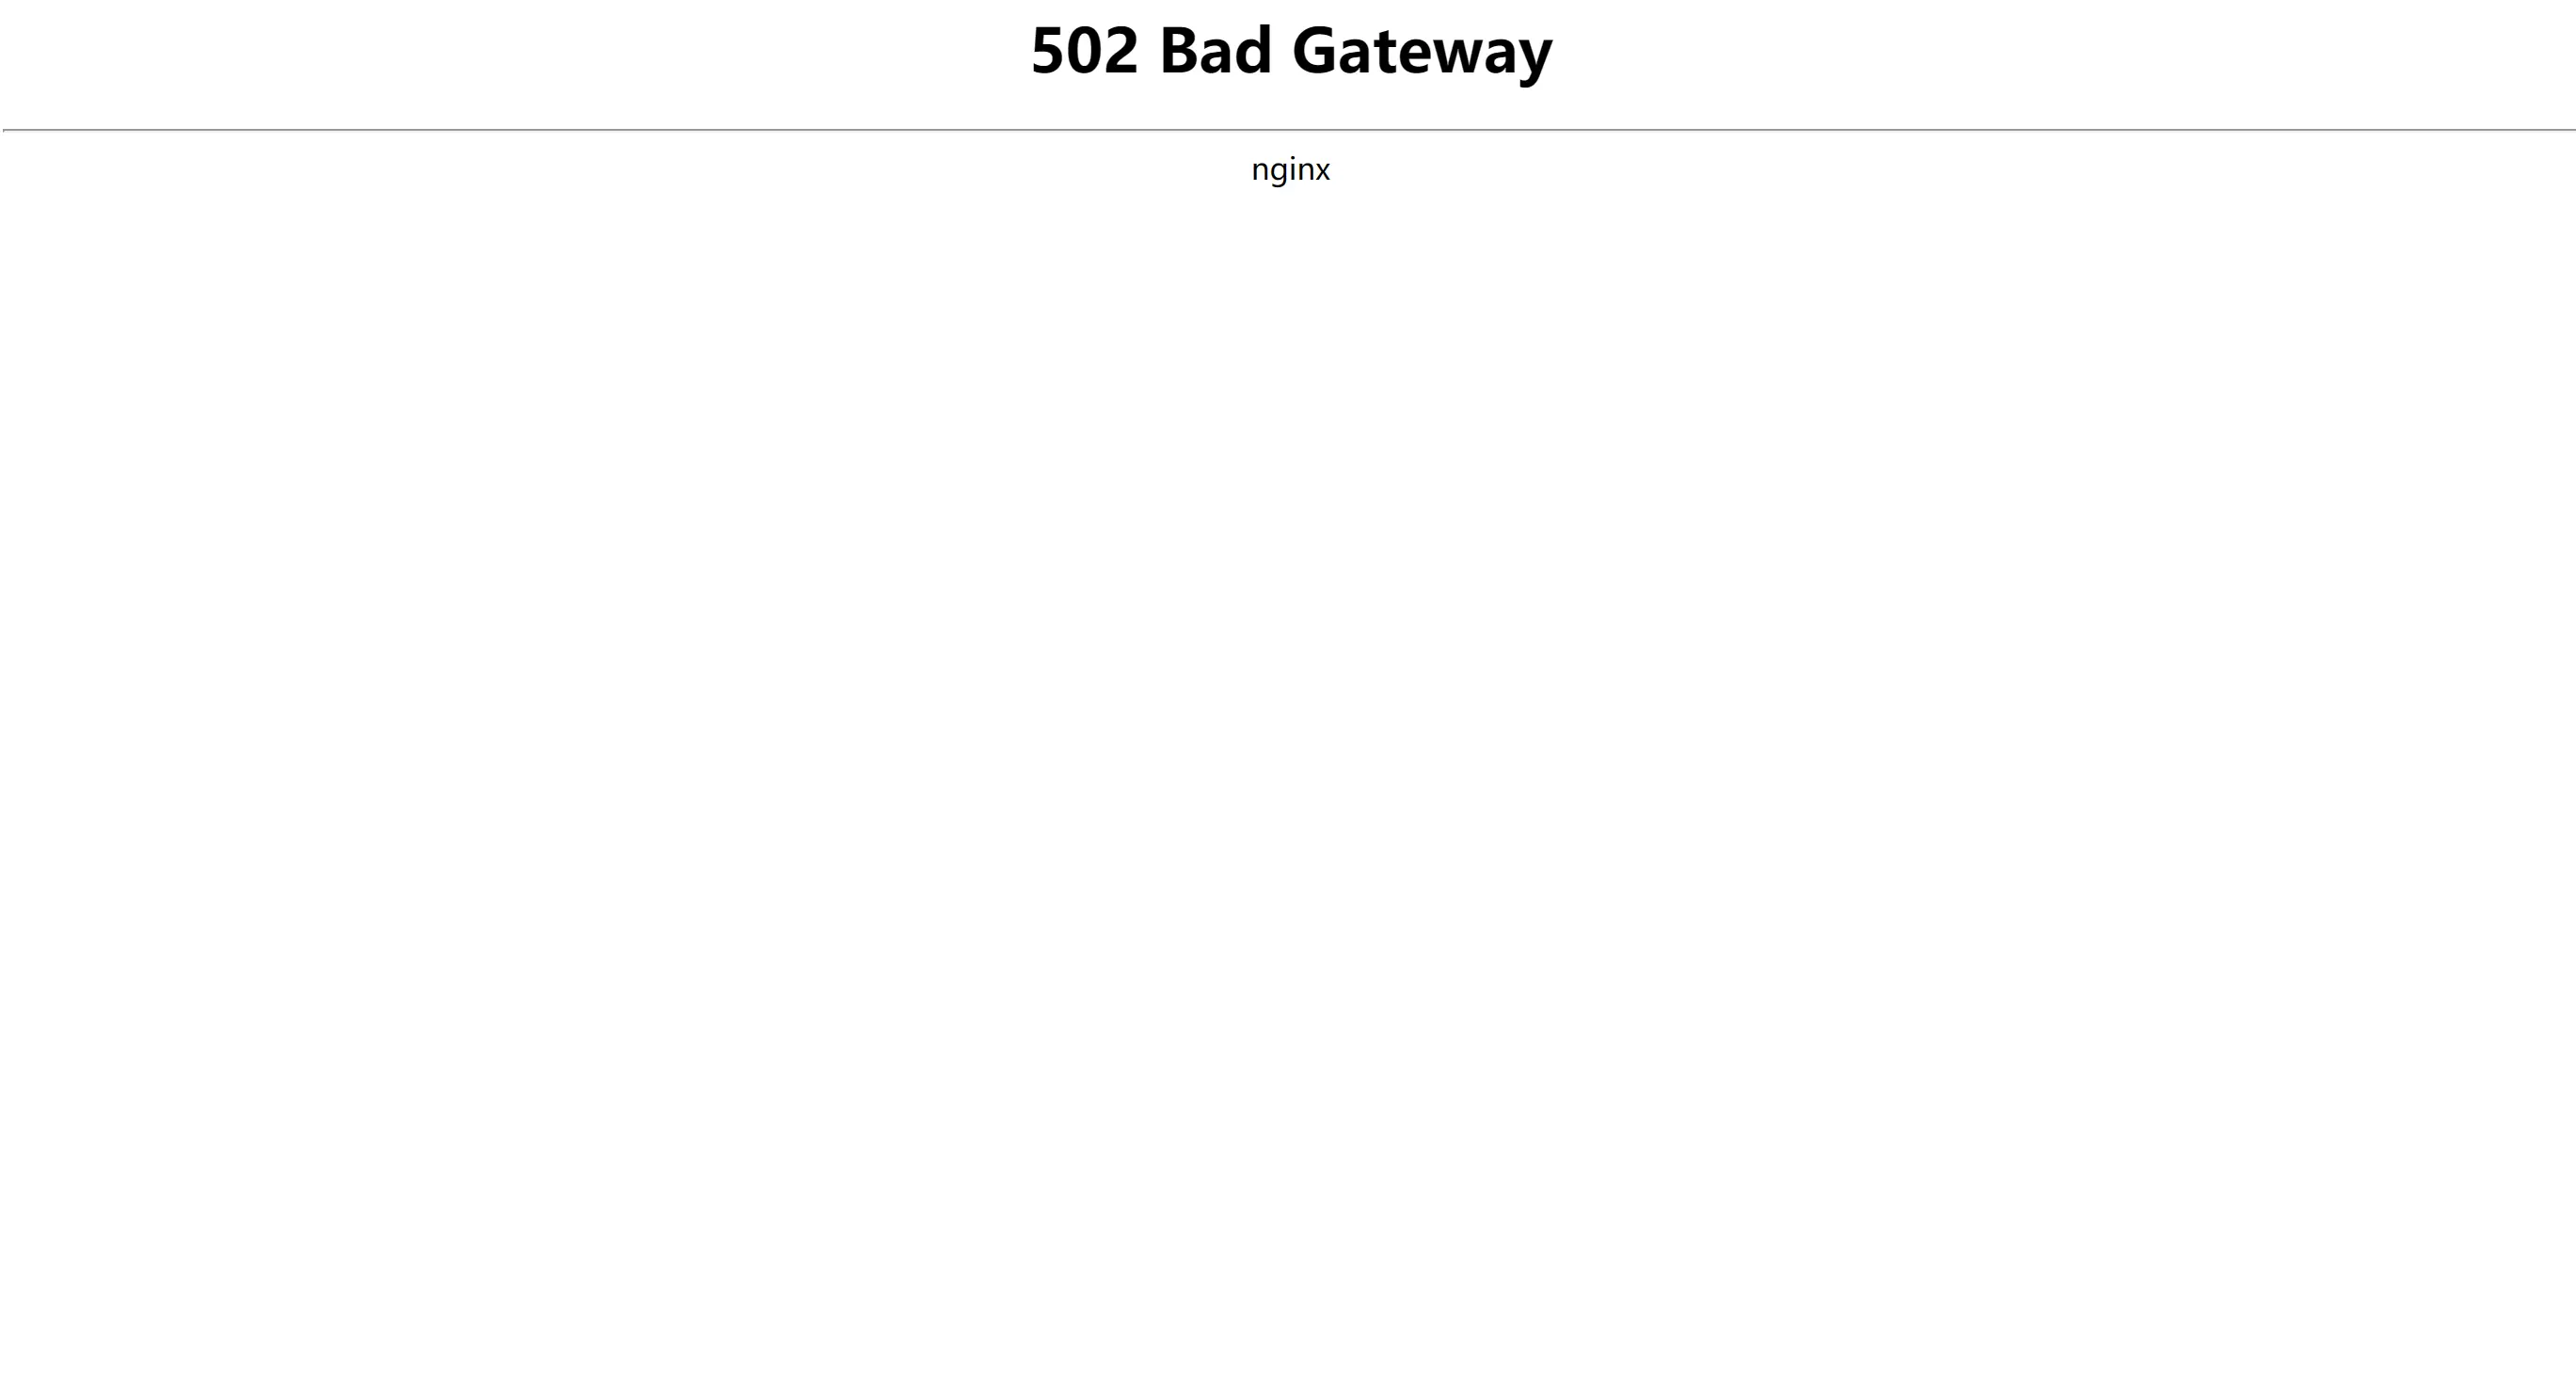 NGINX 502 Bad Gateway